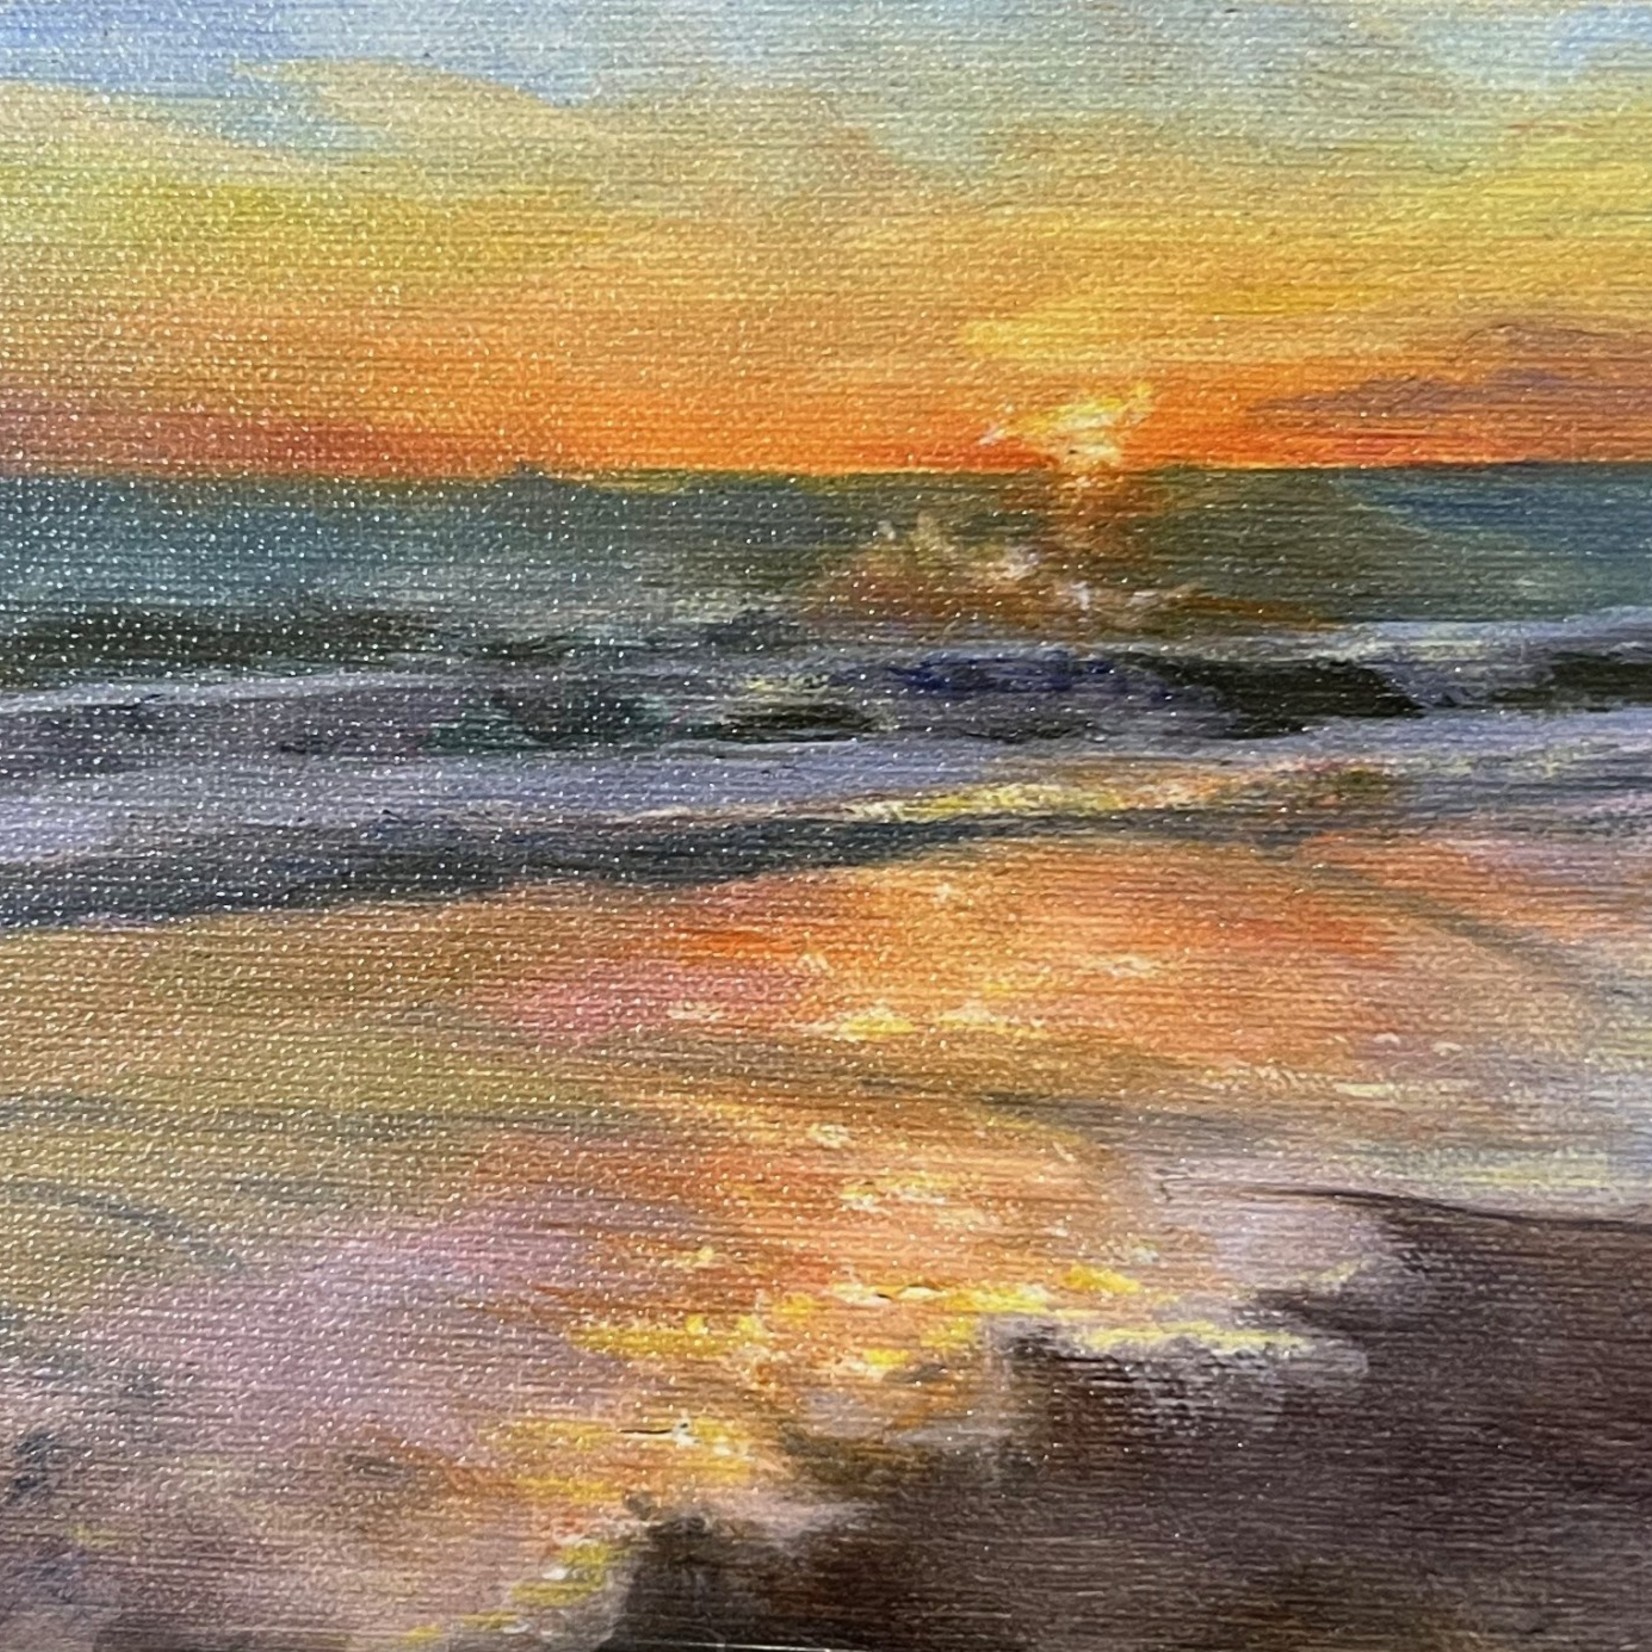 Michaelann Bellerjeau Sunrise, Mini giclee on GW archival canvas w/easel, 5x7.5", MICB